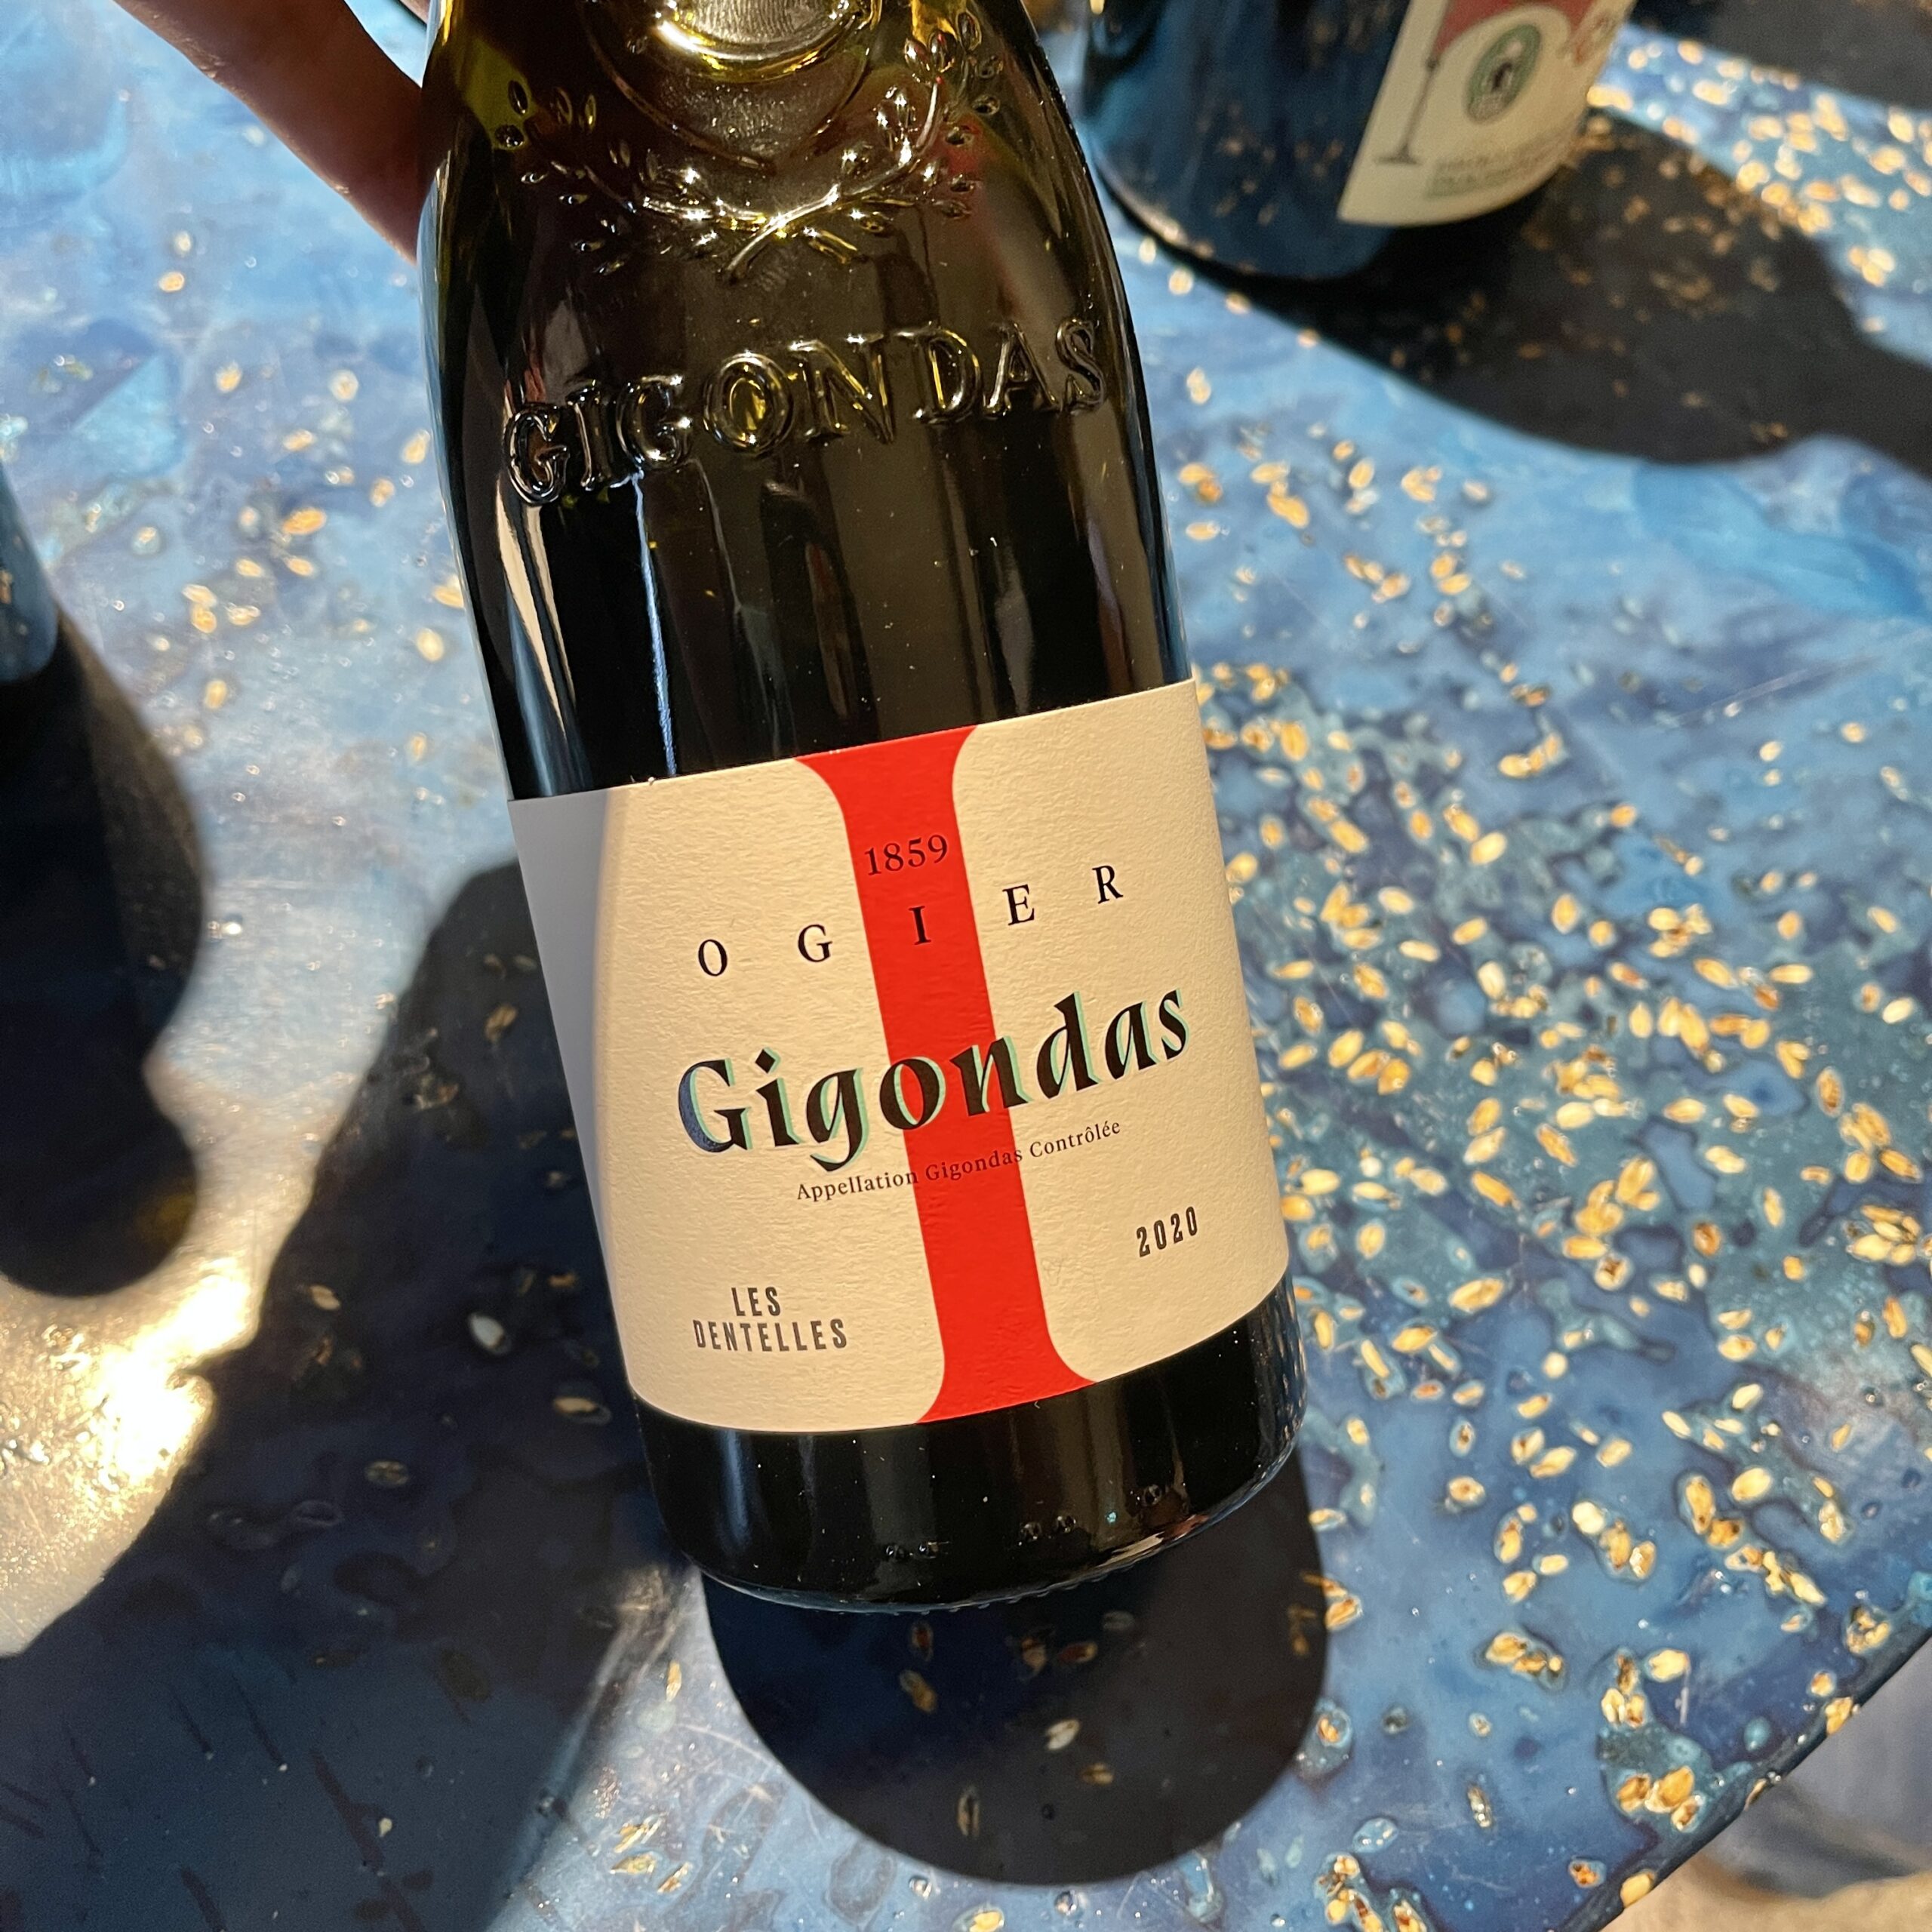 Franska viner med Spring Wine & Spirits - Ogier Gigondas